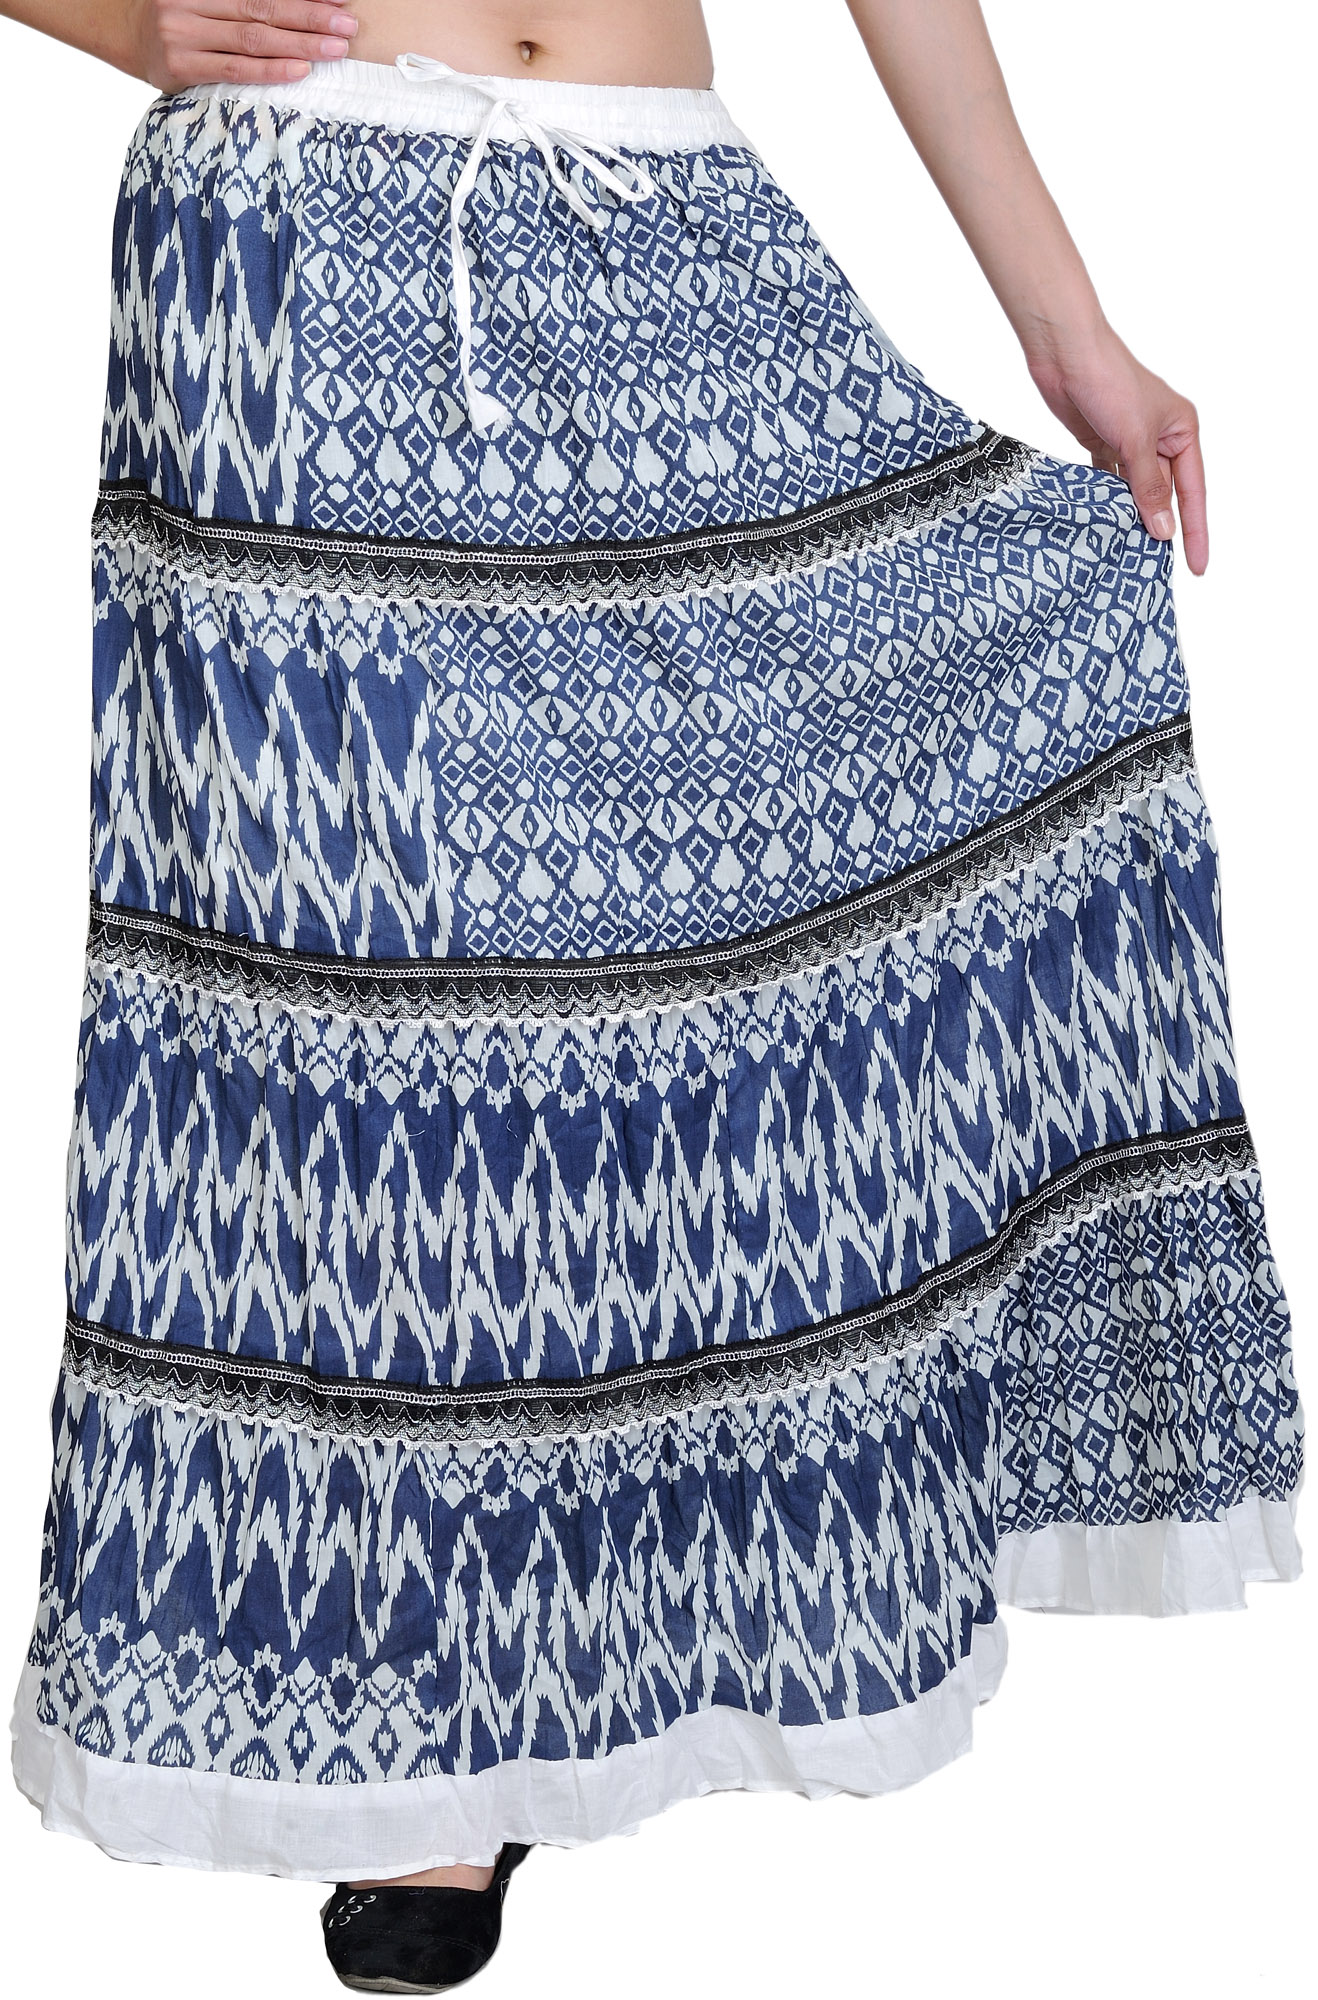 Get Indigo Side Slit Skirt at ₹ 799 | LBB Shop